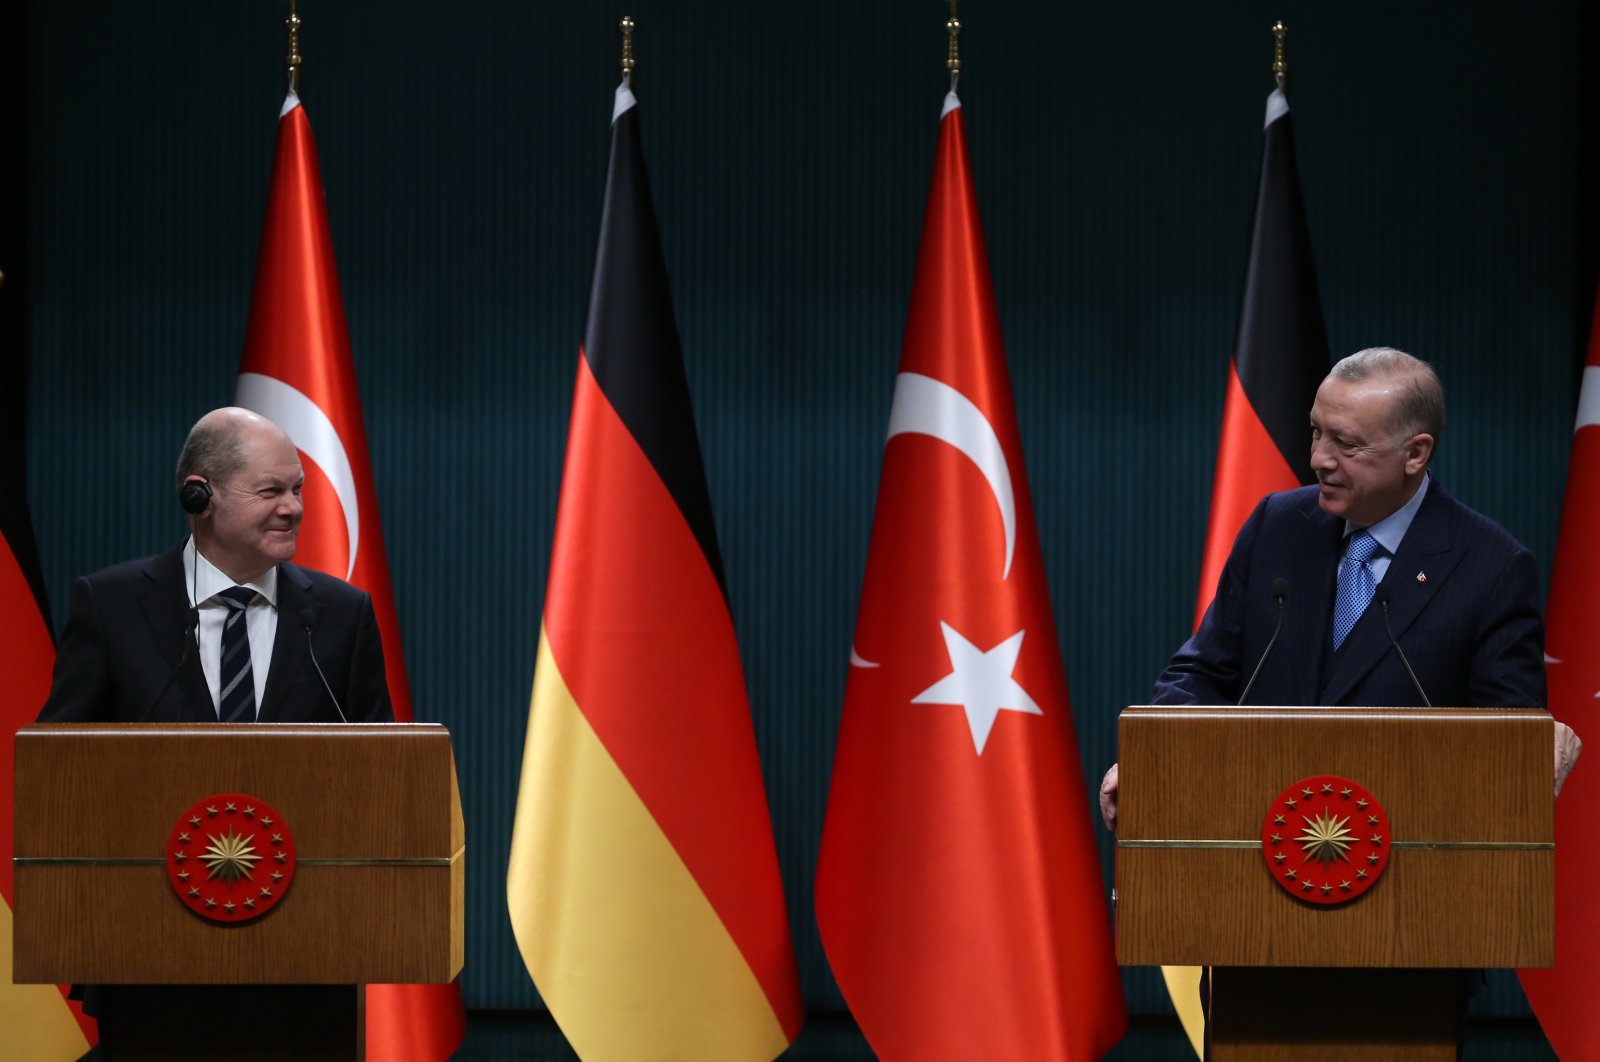 Jerman bertujuan untuk memiliki agenda positif dengan Turki: Duta Besar Schulz